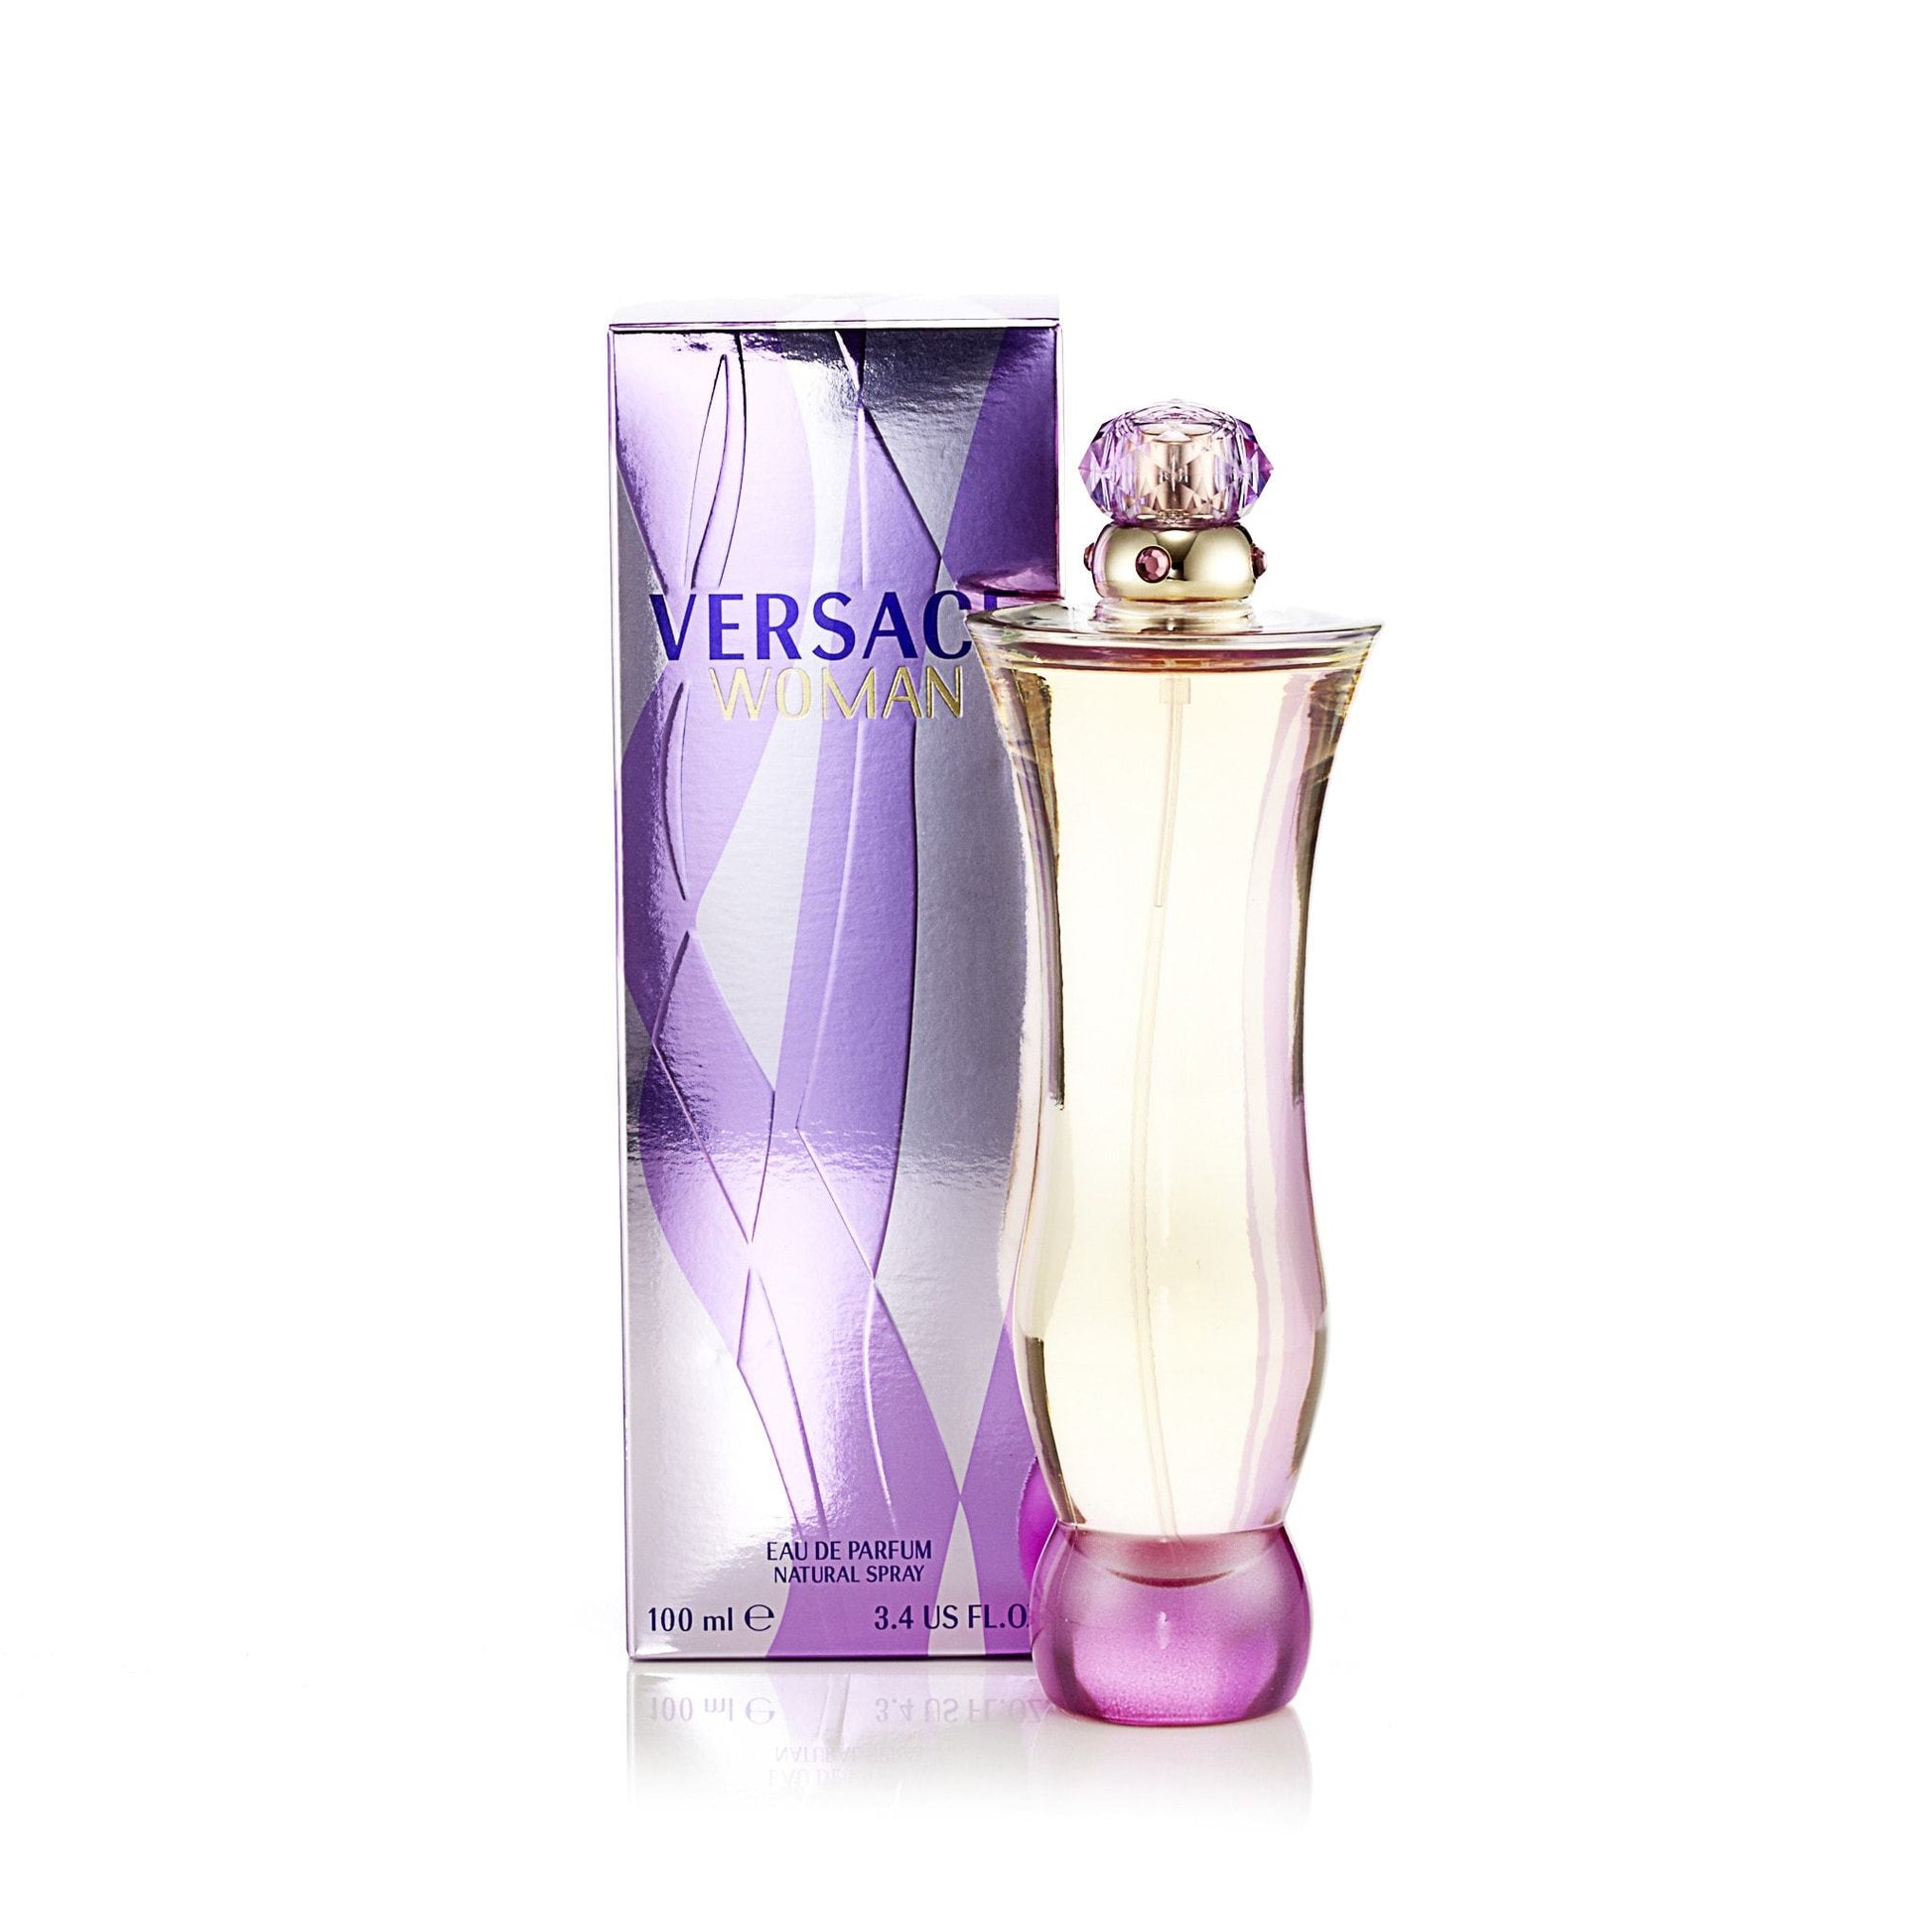 Versace Woman Eau de Parfum Spray for Women by Versace, Product image 2